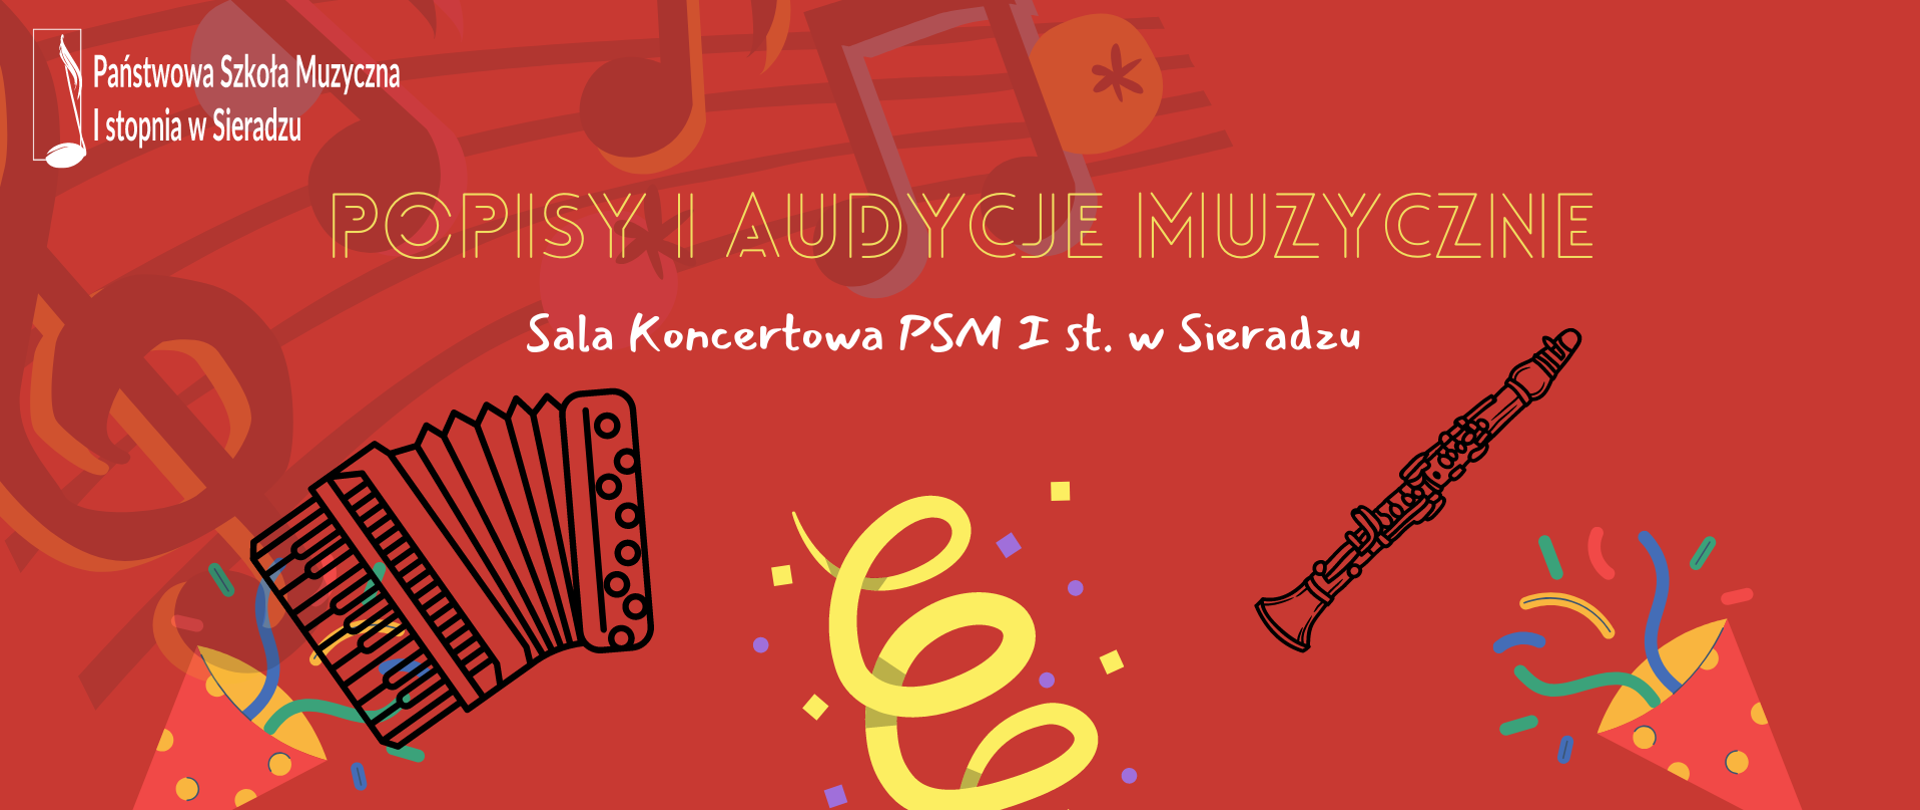 Na czerwonym tle akordeon i klarnet, kolorowe rożki, logo PSM I stopnia w Sieradzu i napis Popisy i audycje muzyczne, poniżej Sala Koncertowa PSM I st. w Sieradzu.
